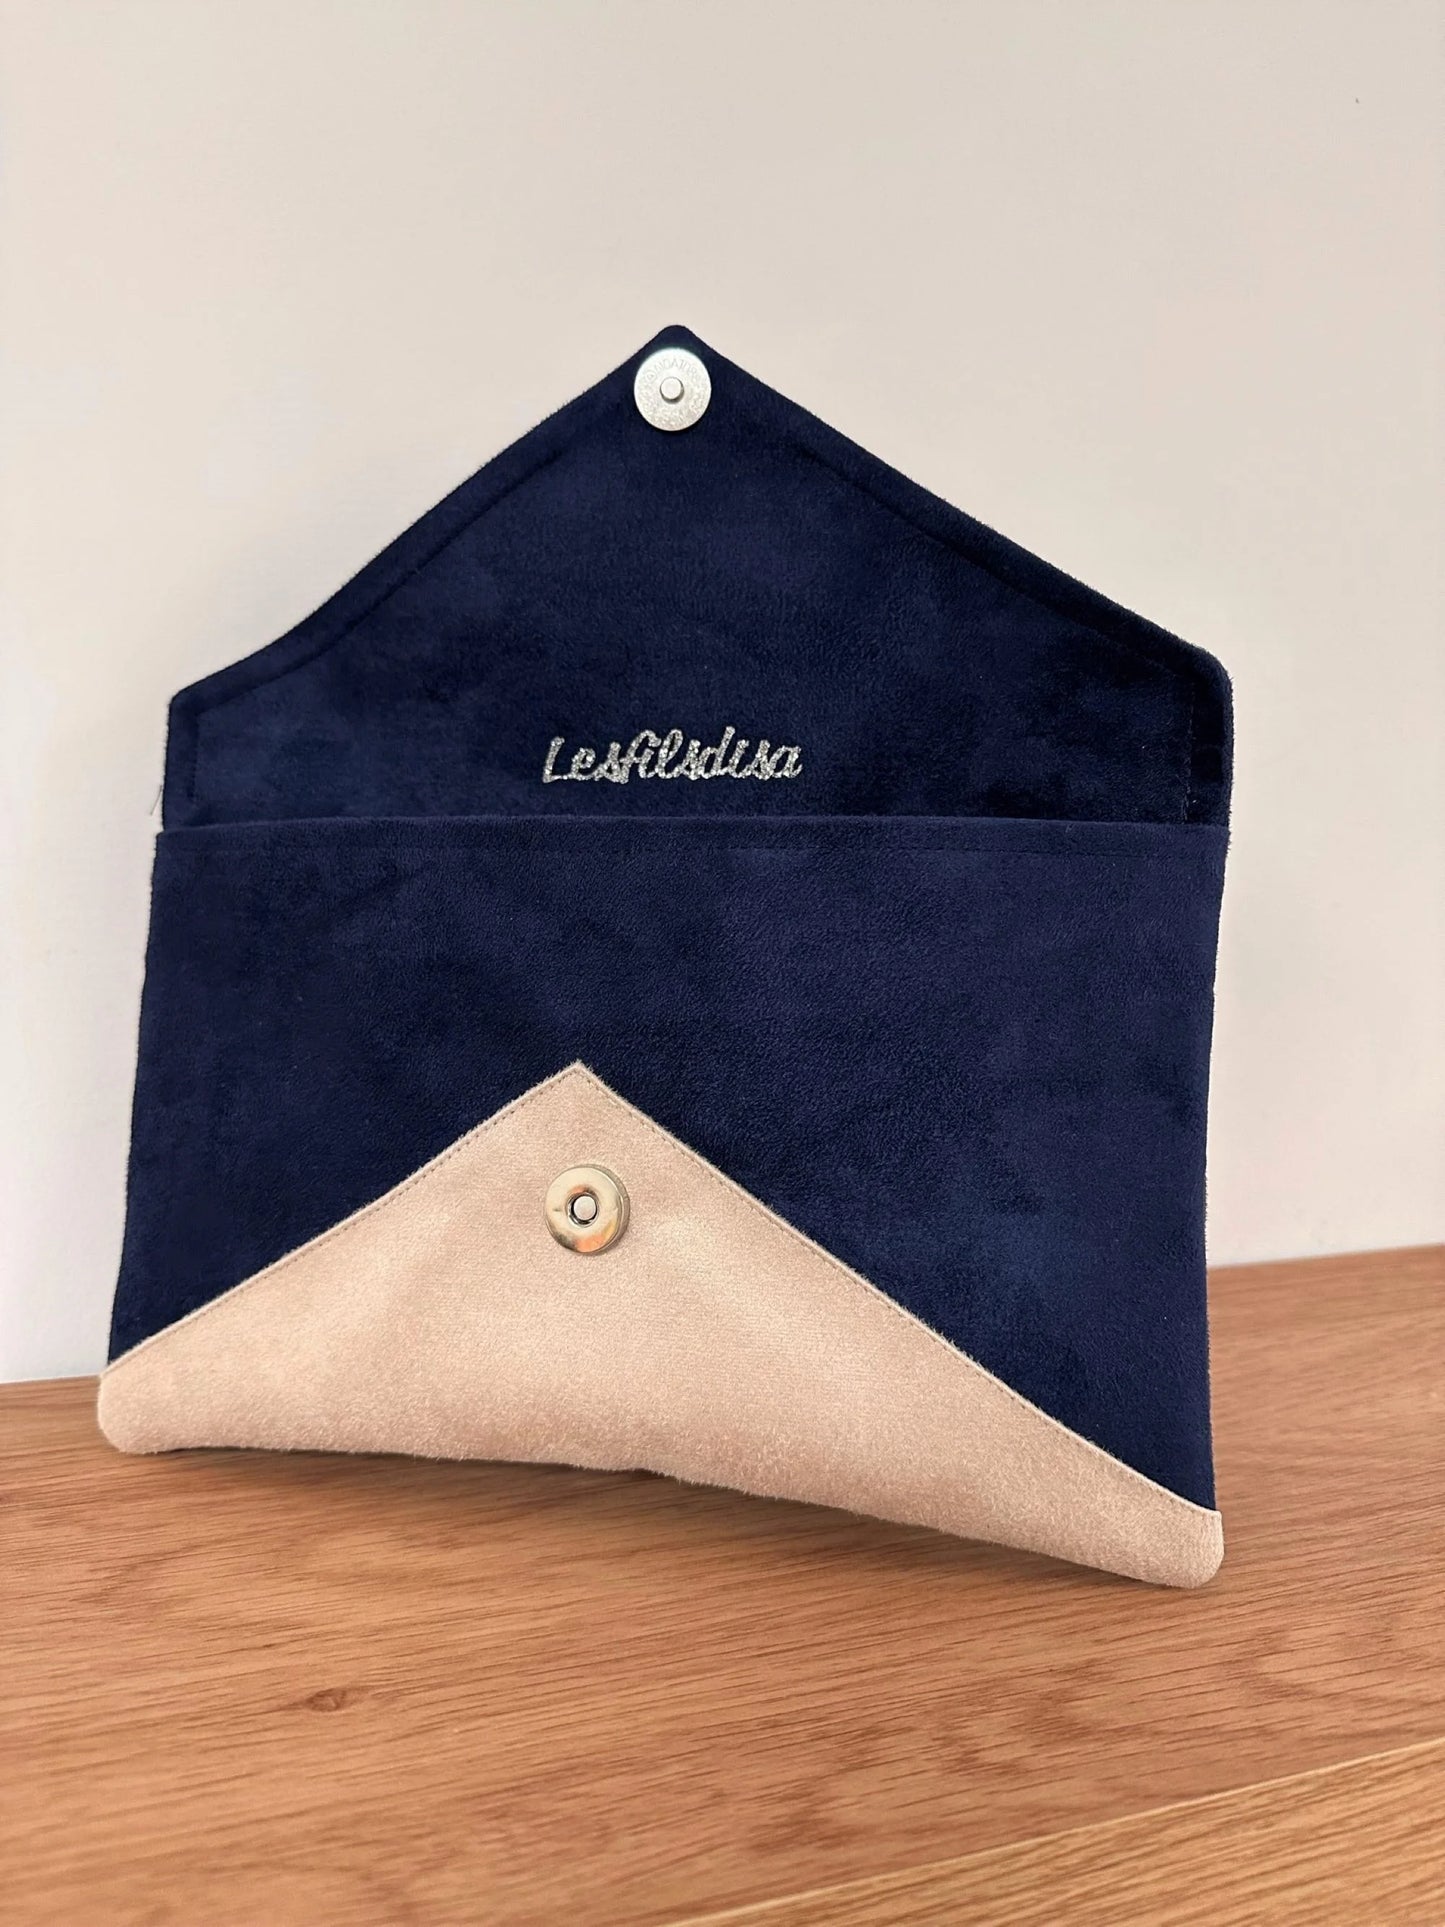 Le sac pochette Isa bleu marine et beige nude à paillettes argentées ouvert.